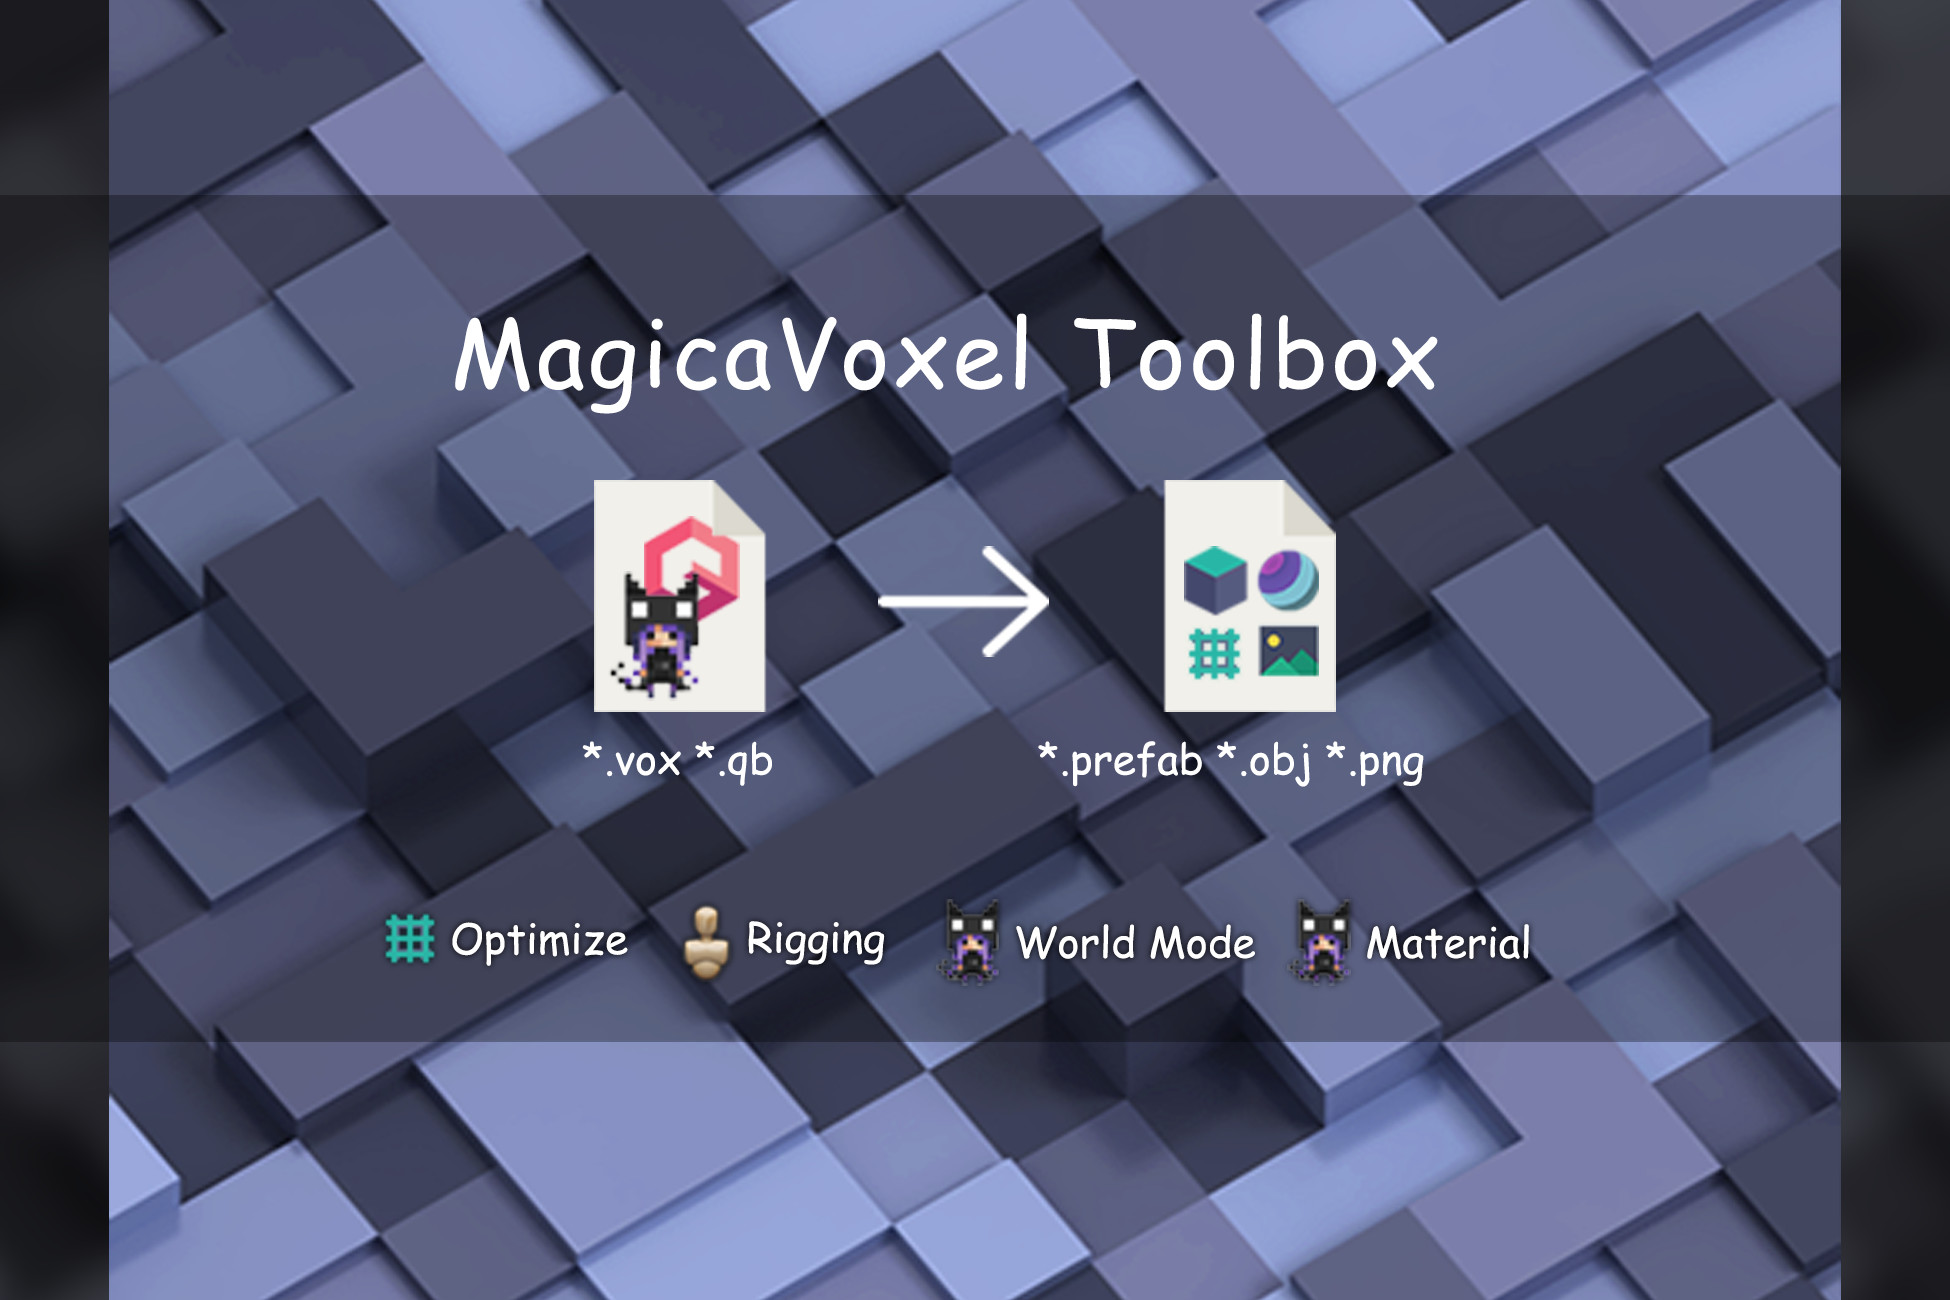 goxel vs magicavoxel